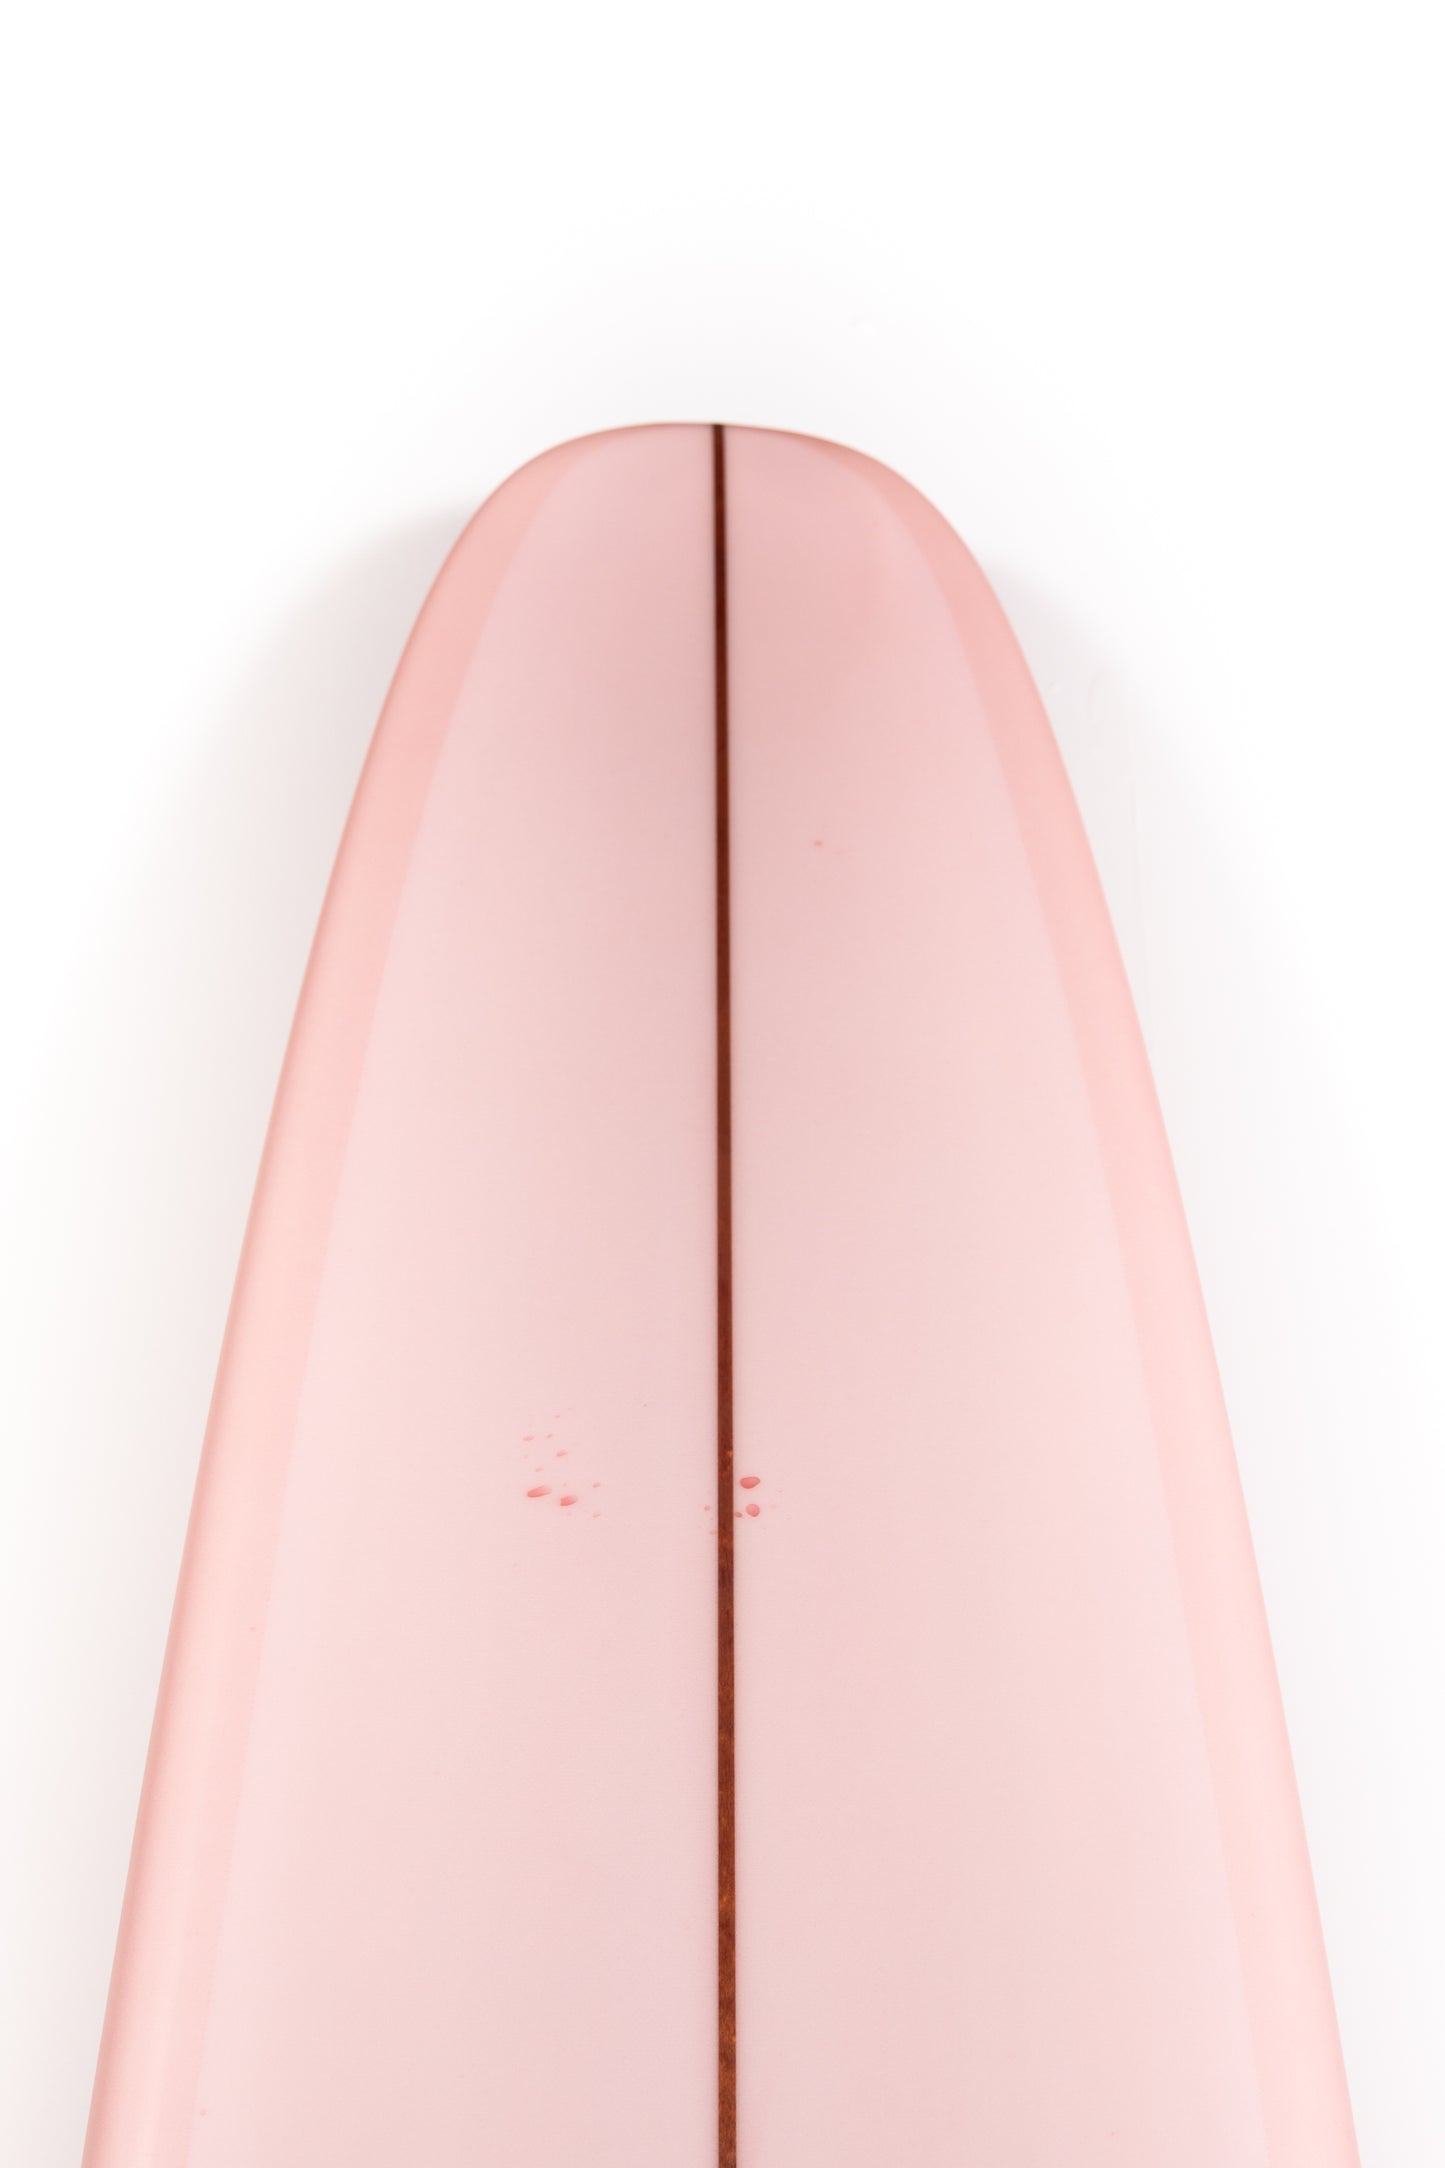 
                  
                    Pukas-Surf-Shop-Thomas-Bexon-Surfboards-Wizl-Thomas-Bexon-9_8_-WIZL98ROSE
                  
                